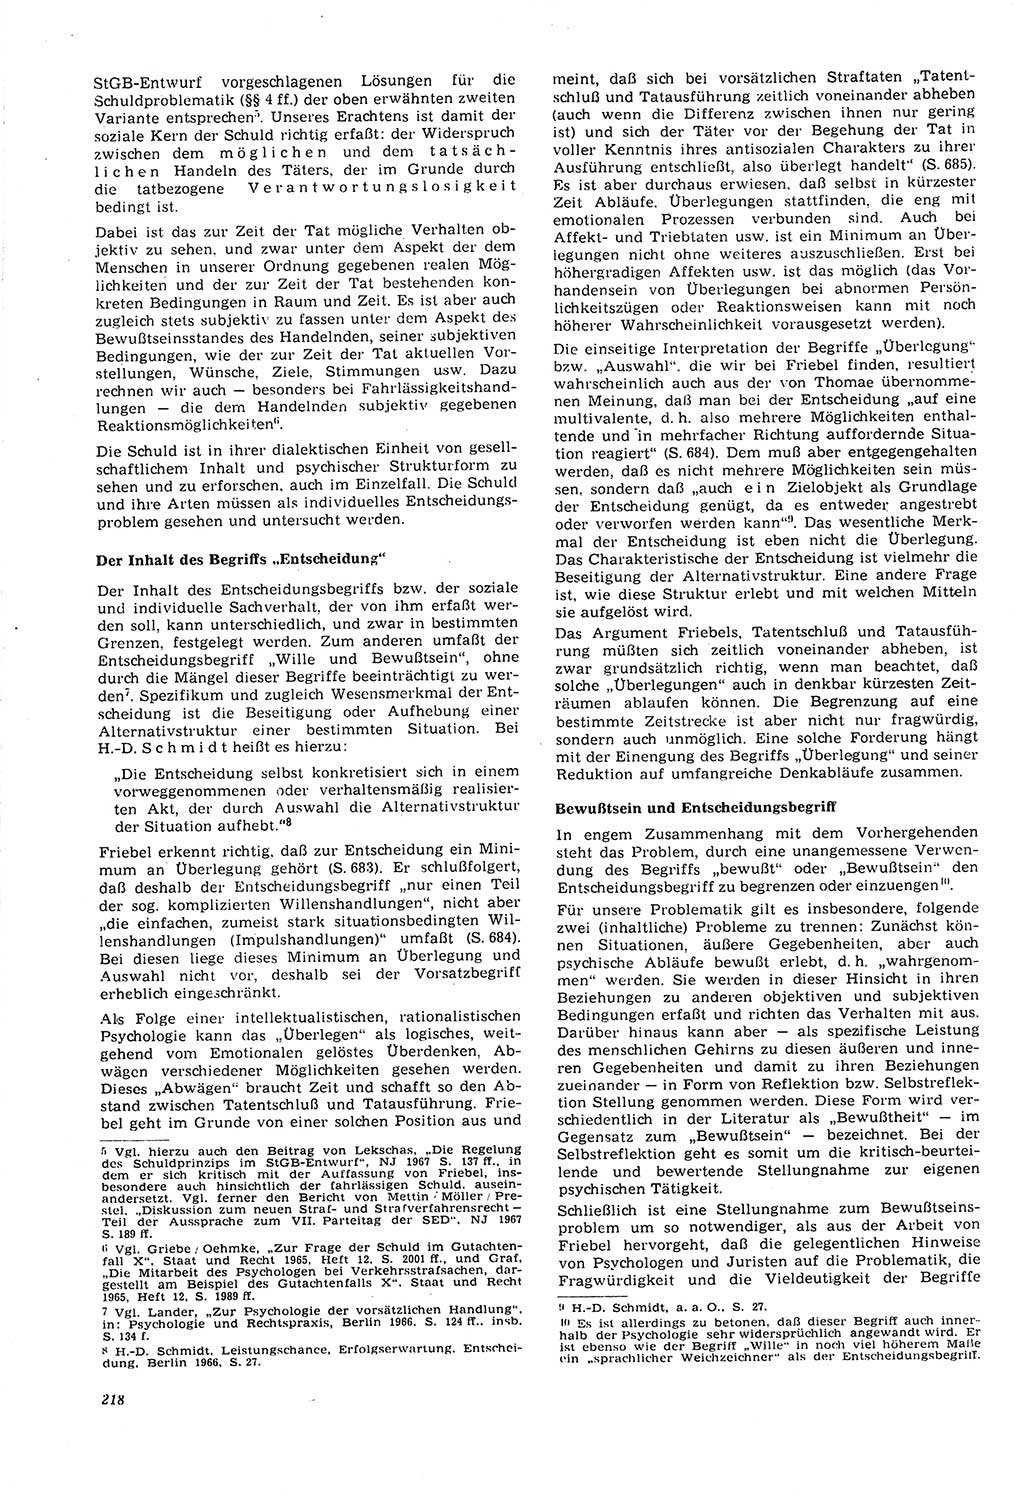 Neue Justiz (NJ), Zeitschrift für Recht und Rechtswissenschaft [Deutsche Demokratische Republik (DDR)], 21. Jahrgang 1967, Seite 218 (NJ DDR 1967, S. 218)